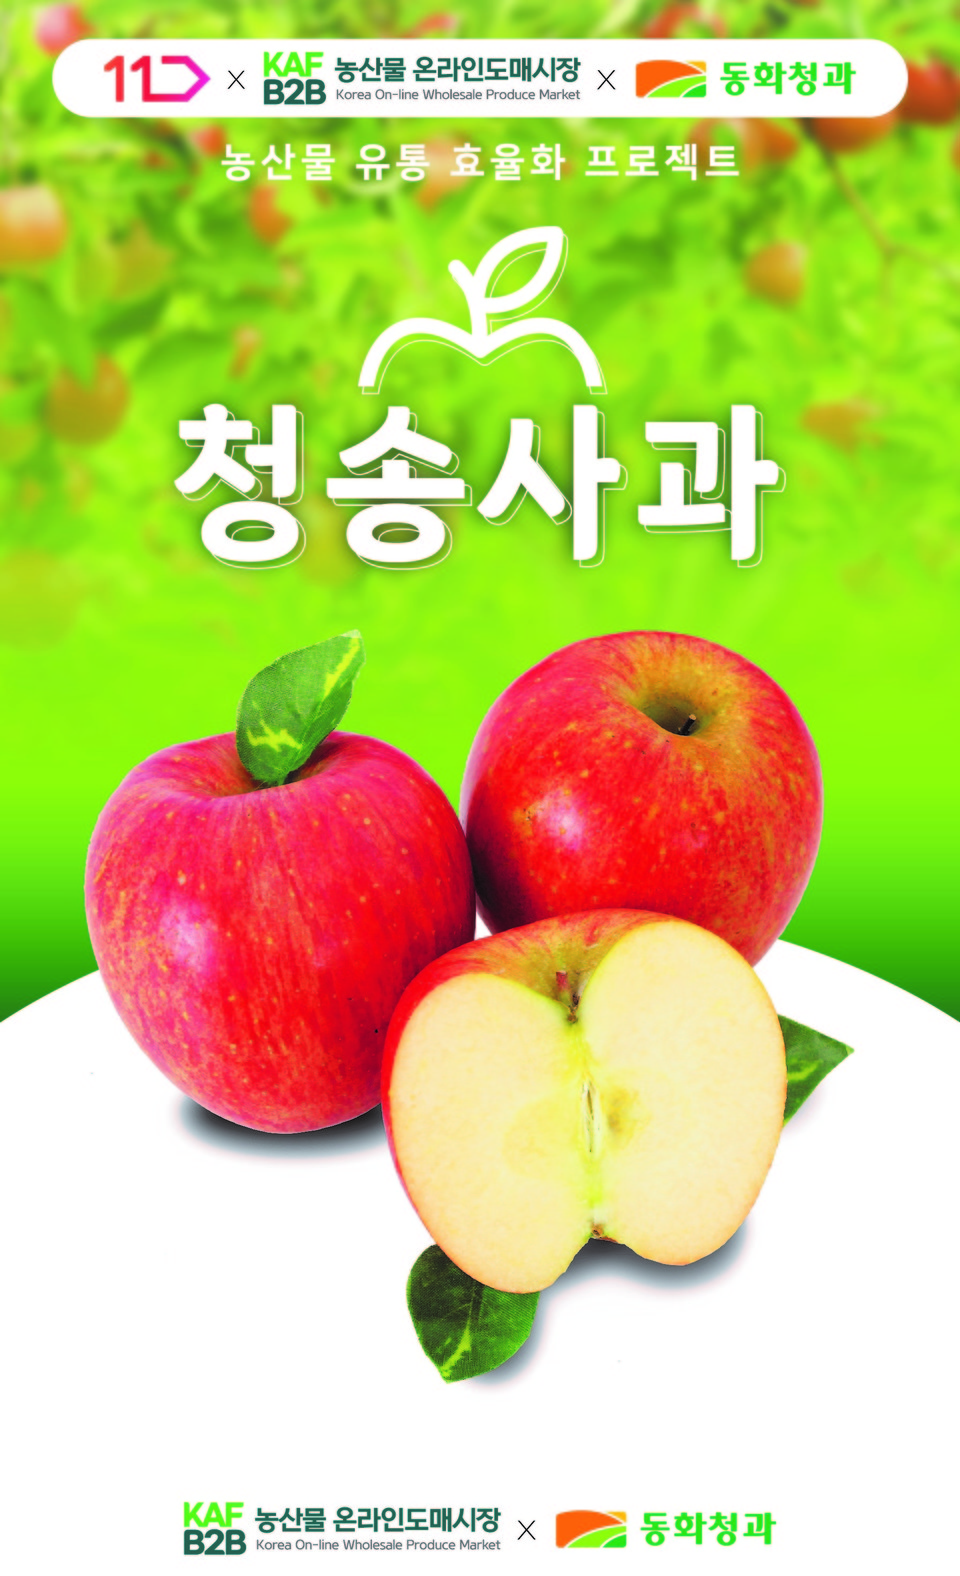 한국농수산식품유통공사(aT)가 운영하는 ‘농산물 온라인도매시장에서 ‘11번가’ 첫 거래가 시작된다. [사진=한국농수산식품유통공사] 